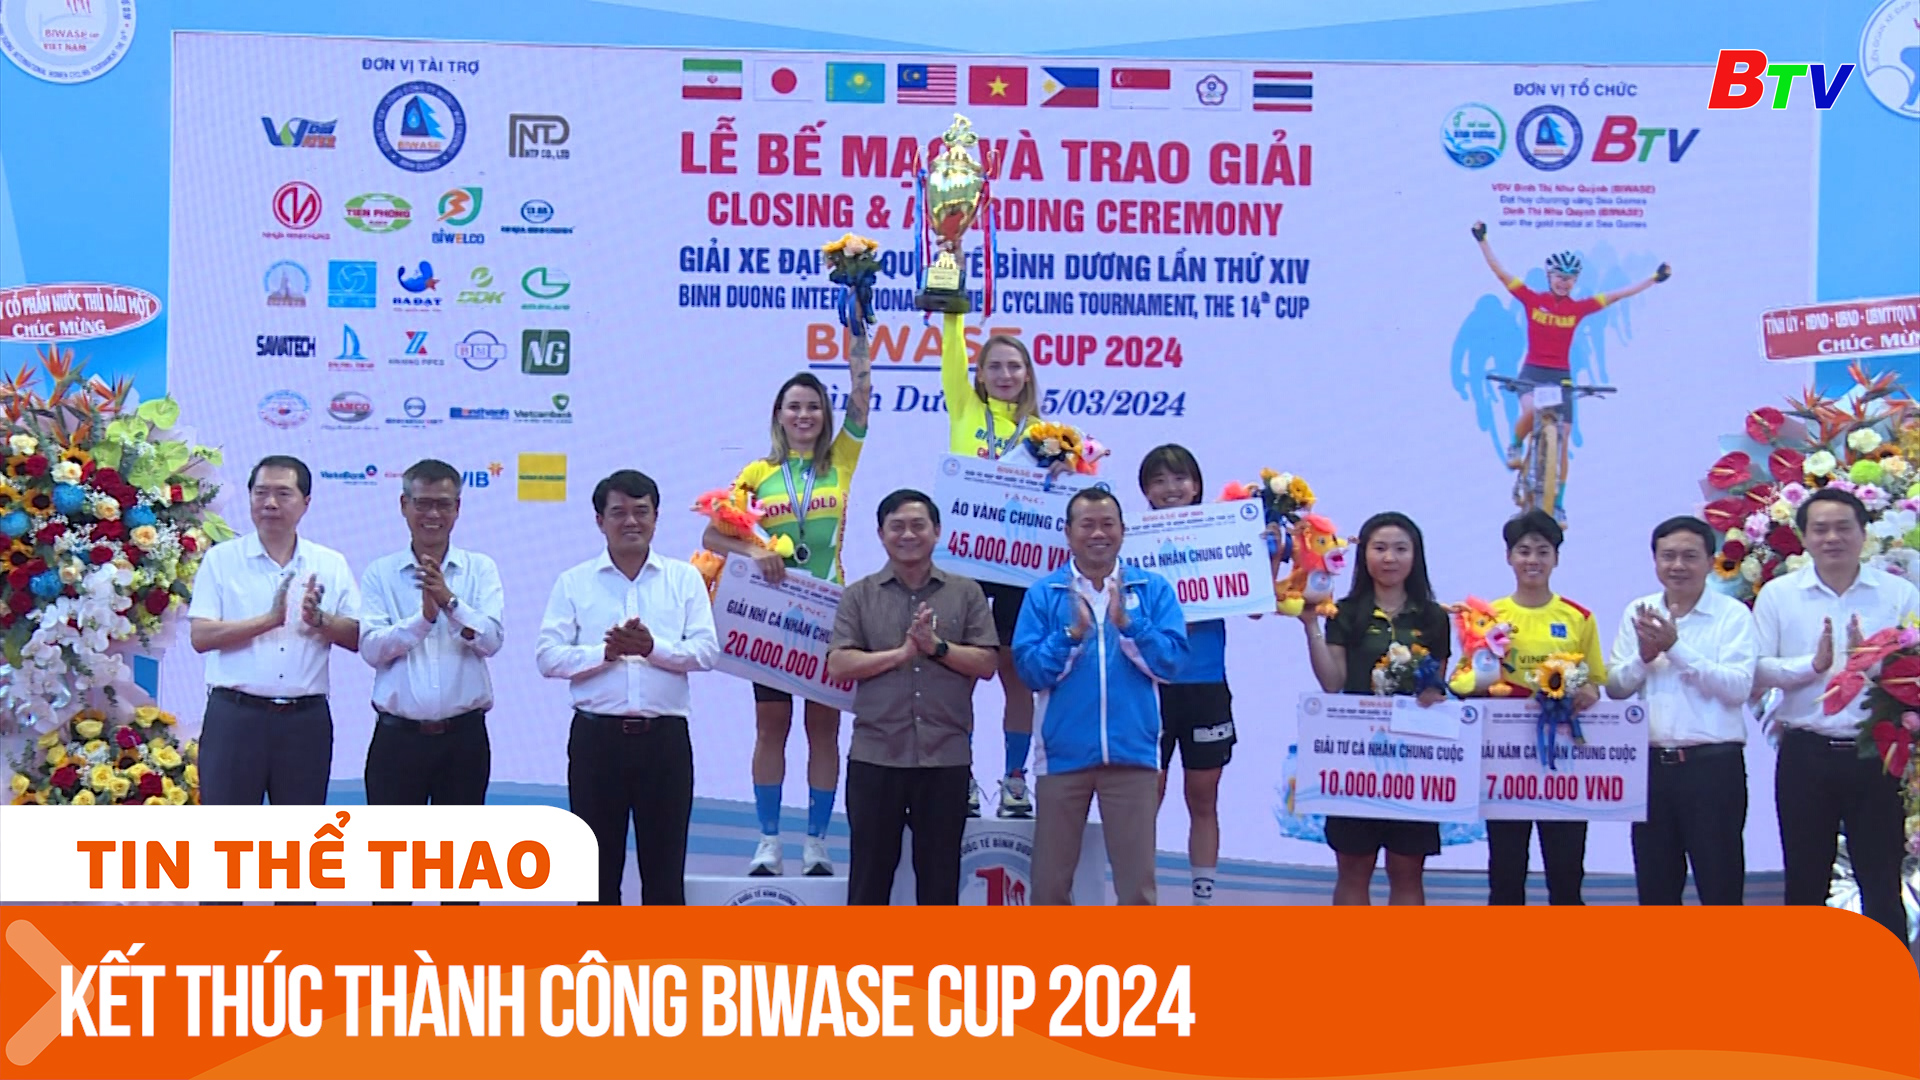 Kết thúc thành công Giải xe đạp nữ quốc tế Bình Dương - Biwase Cup 2024 | Tin Thể thao 24h	